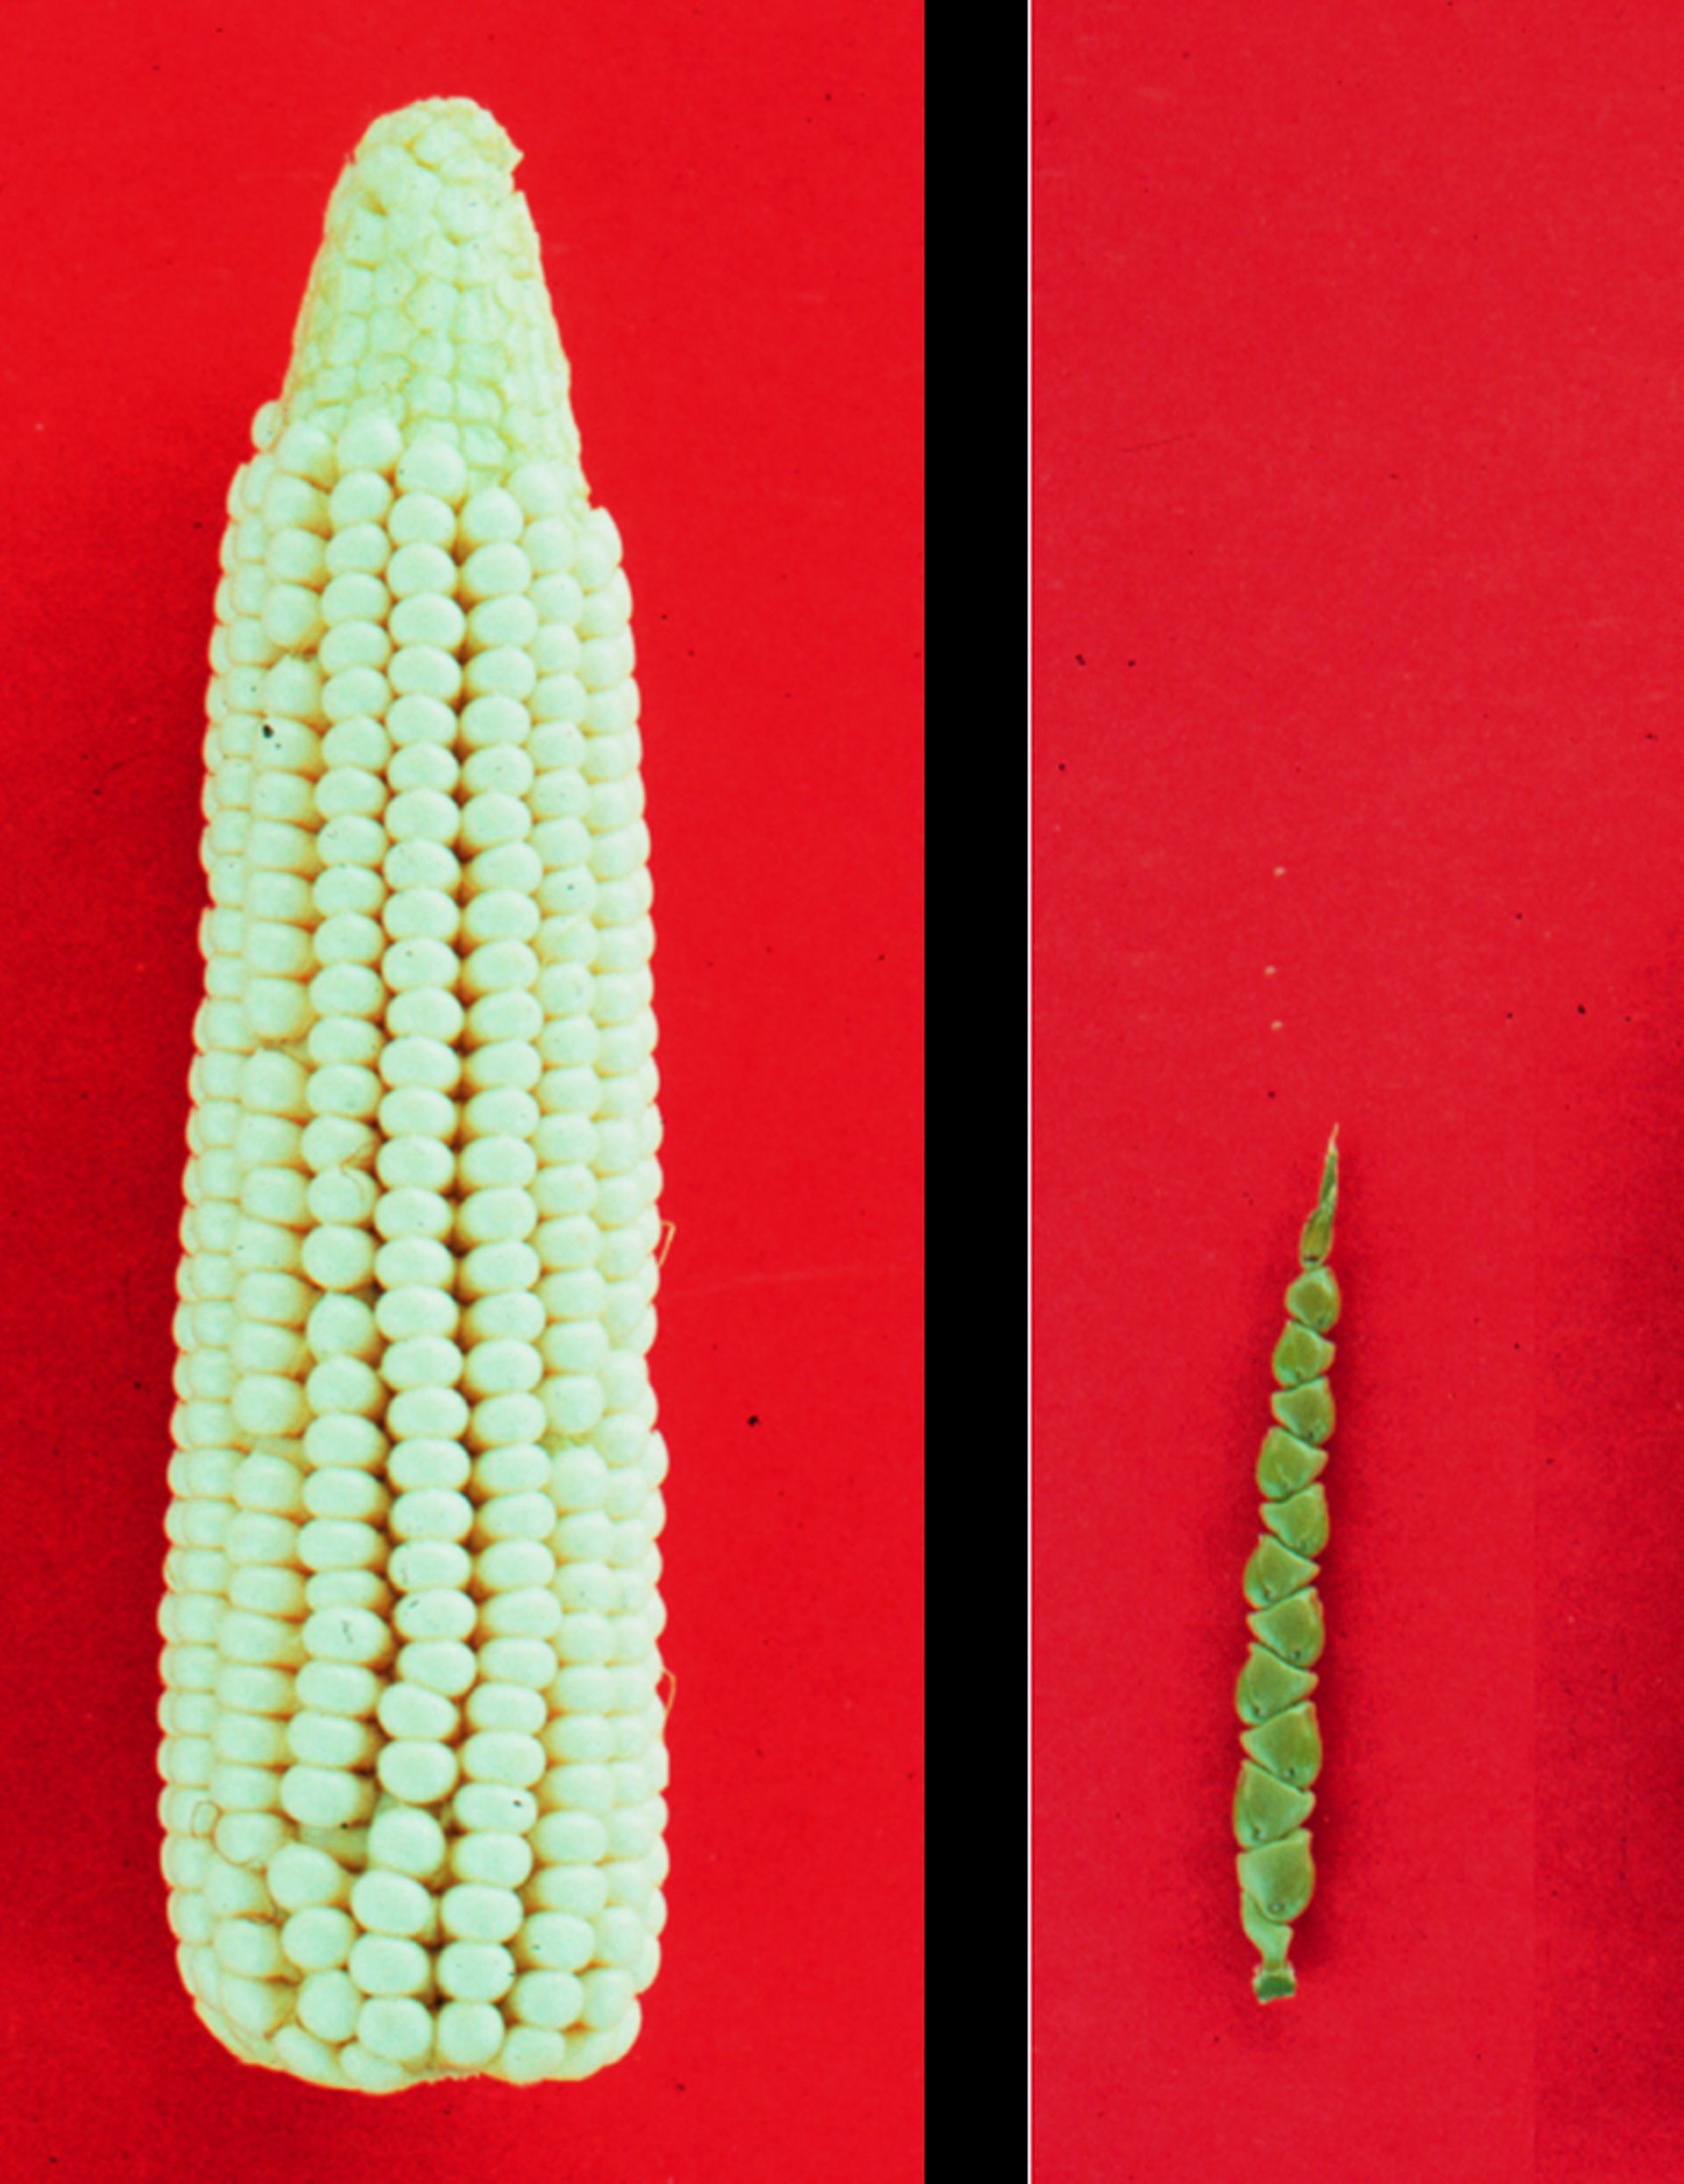 Comparaison des épis de maïs (à gauche) et de téosinte, son espèce ancestrale (à droite) 